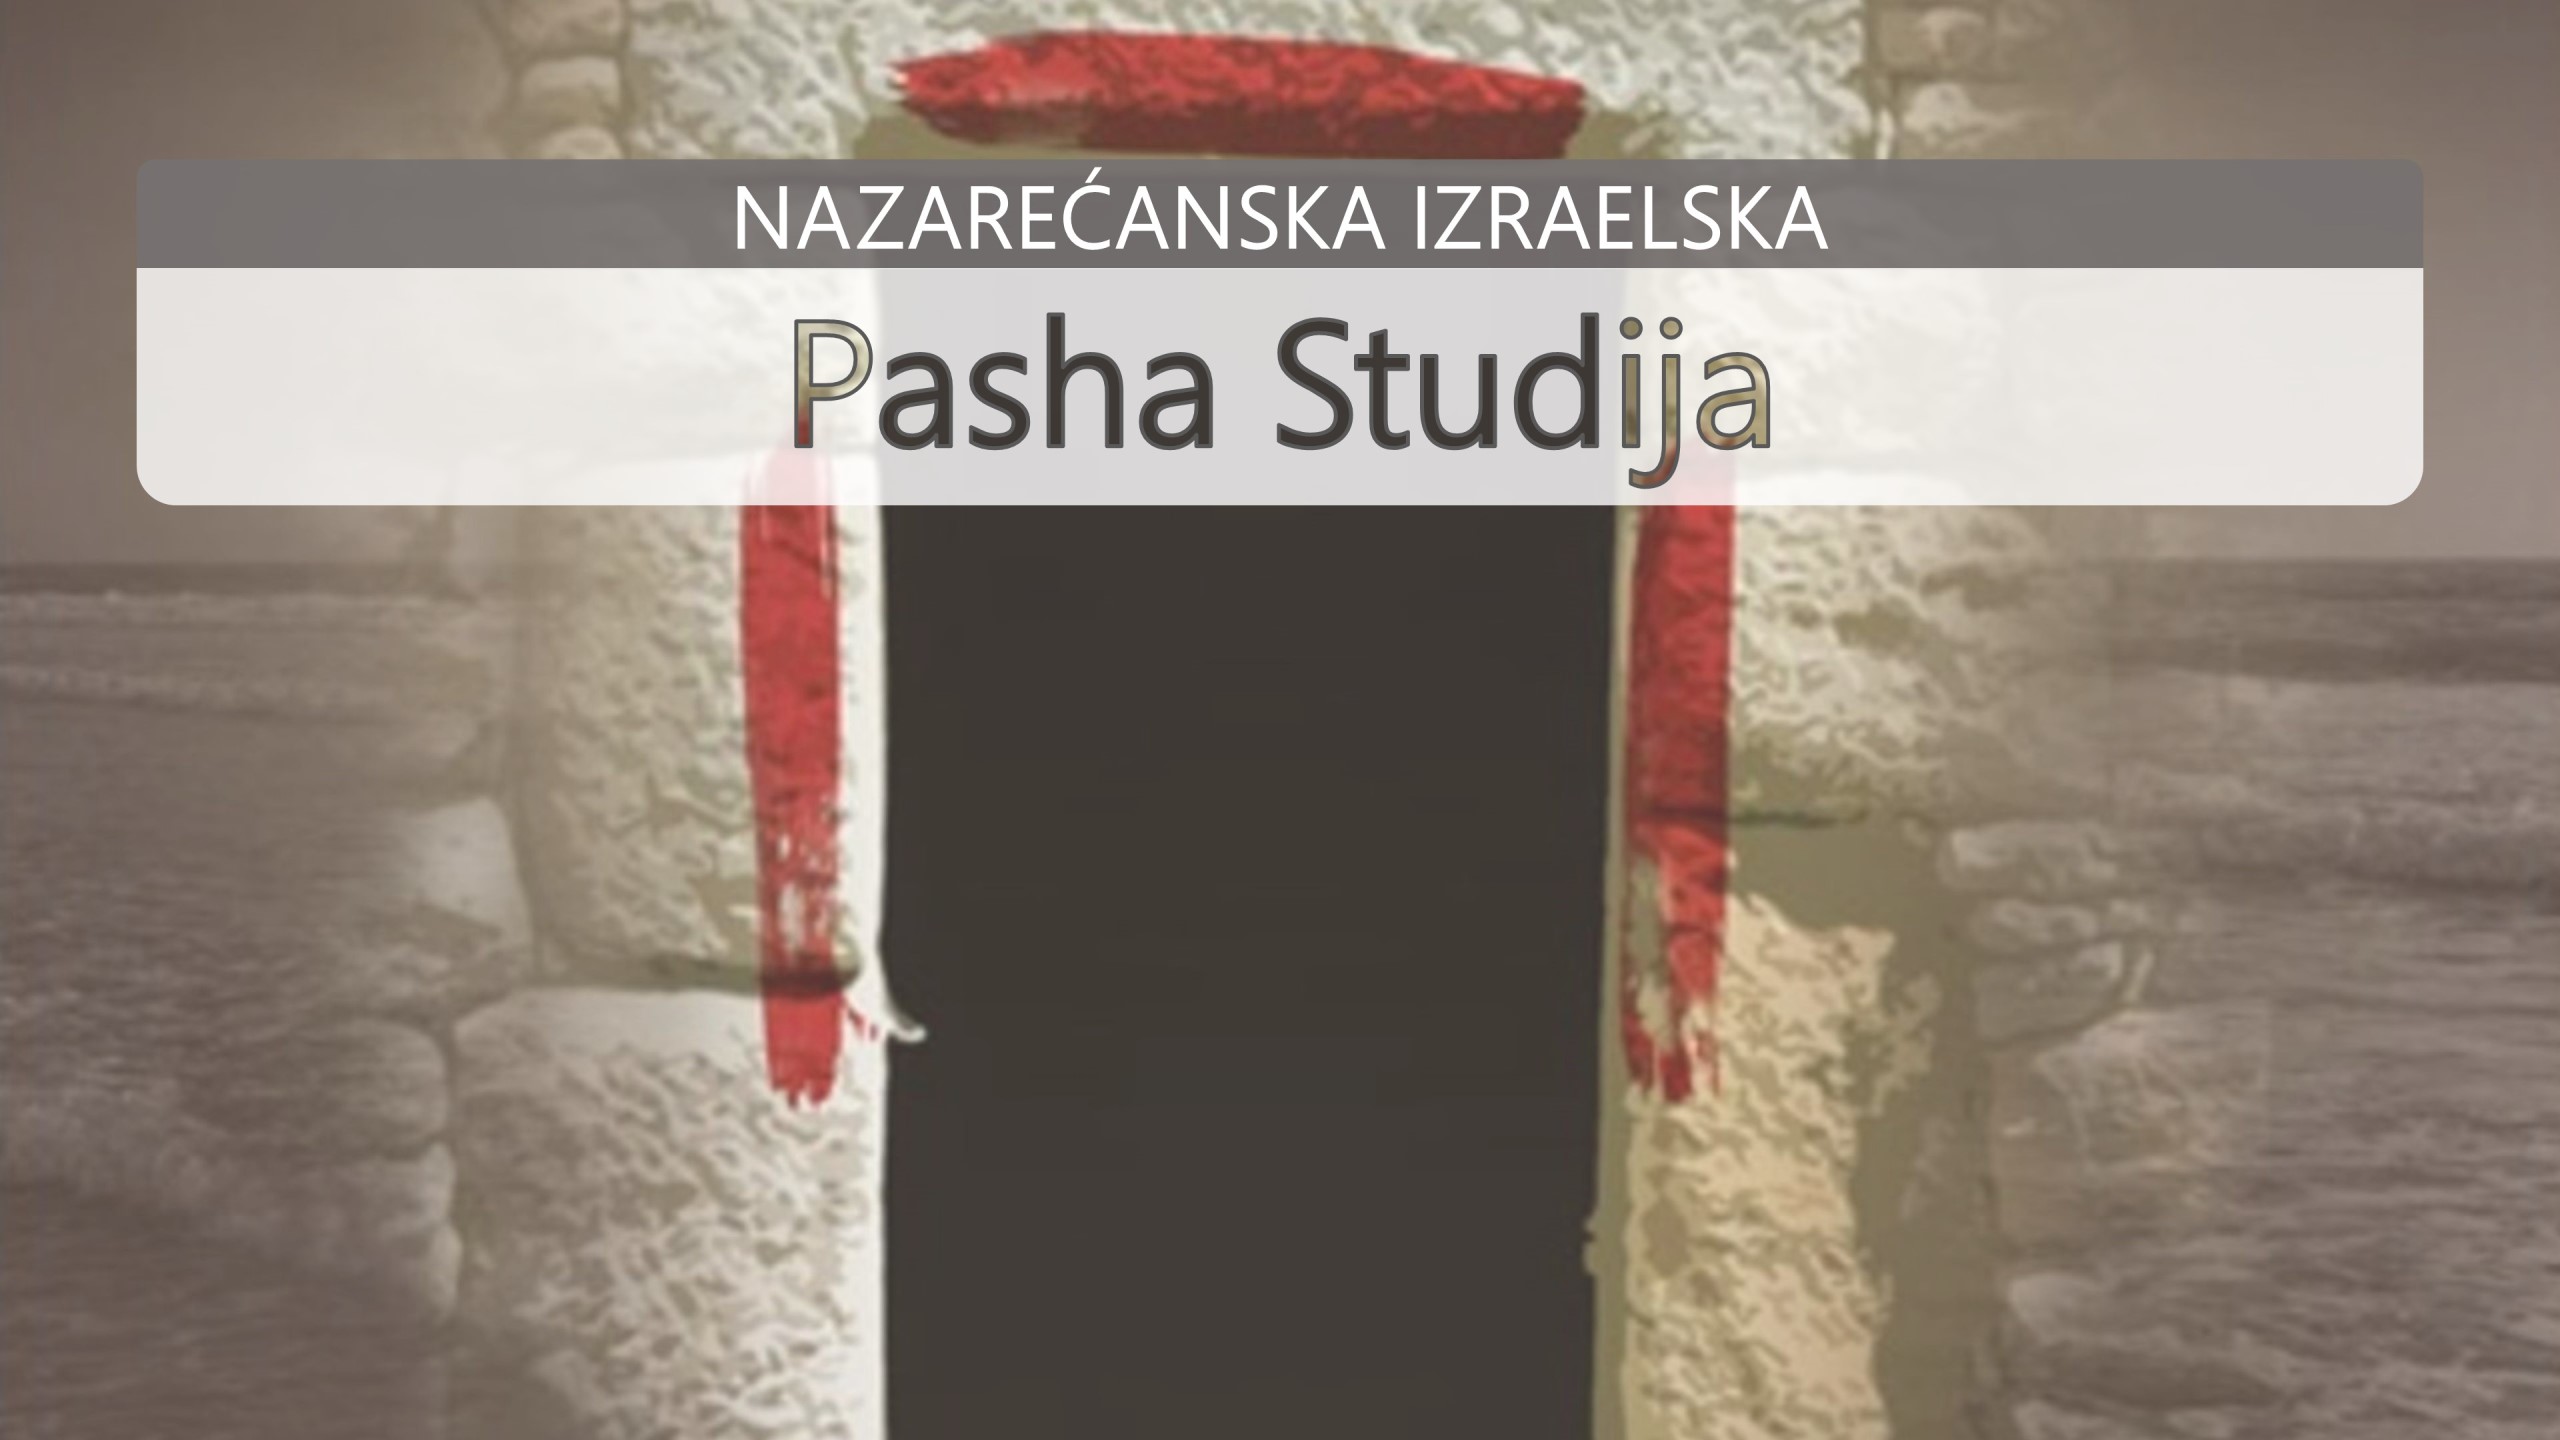 Nazarećanska Izraelska Pasha Studija